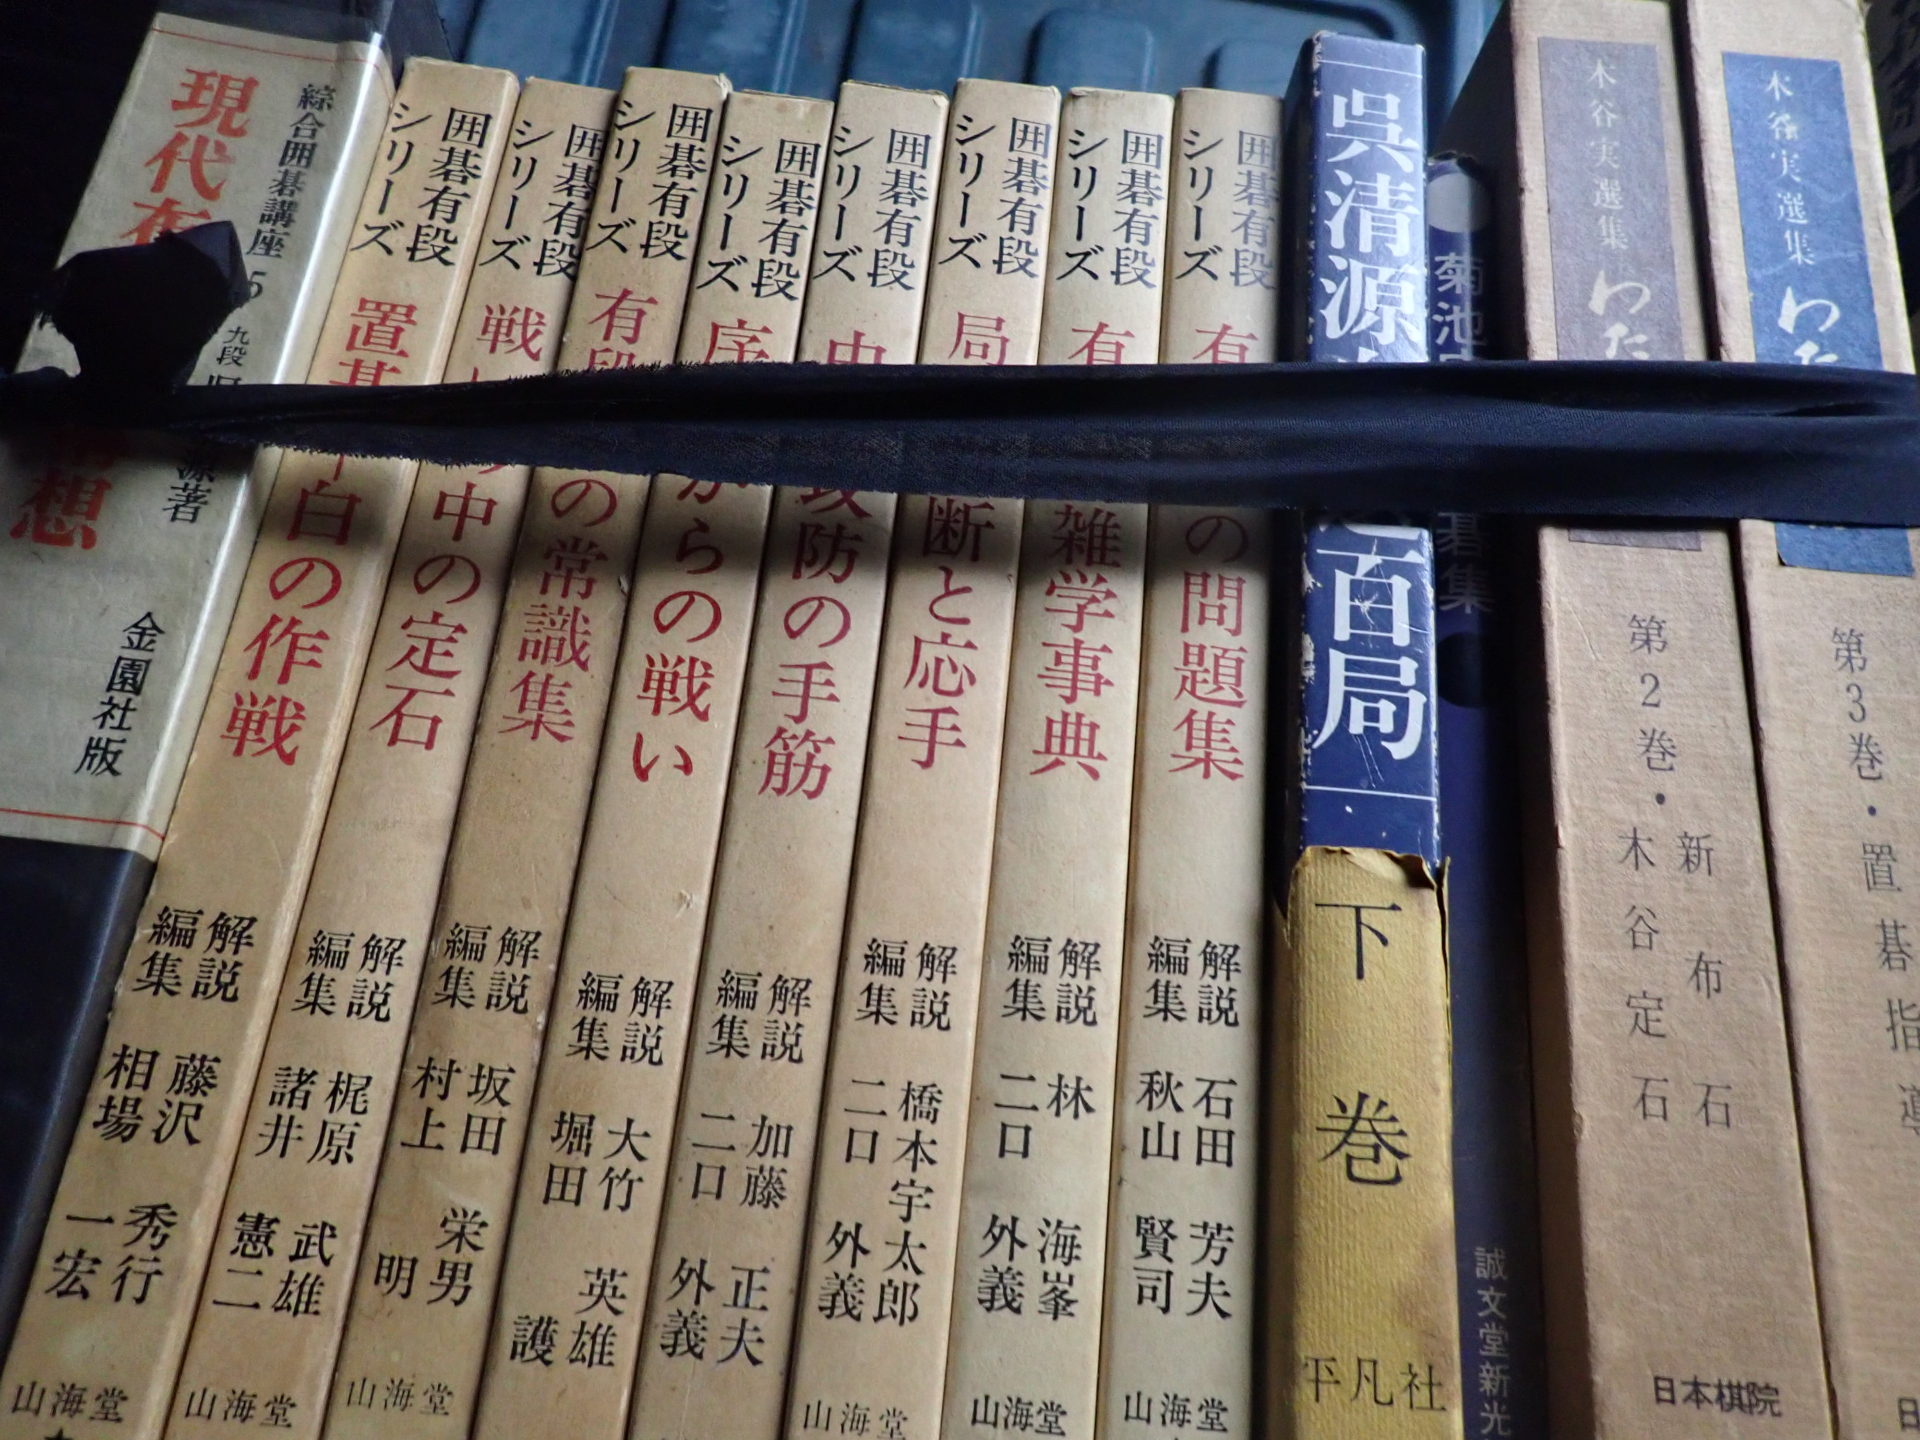 囲碁の本など古書 買取しました | 岐阜・名古屋で古本・古書の買取ならスマイルブック